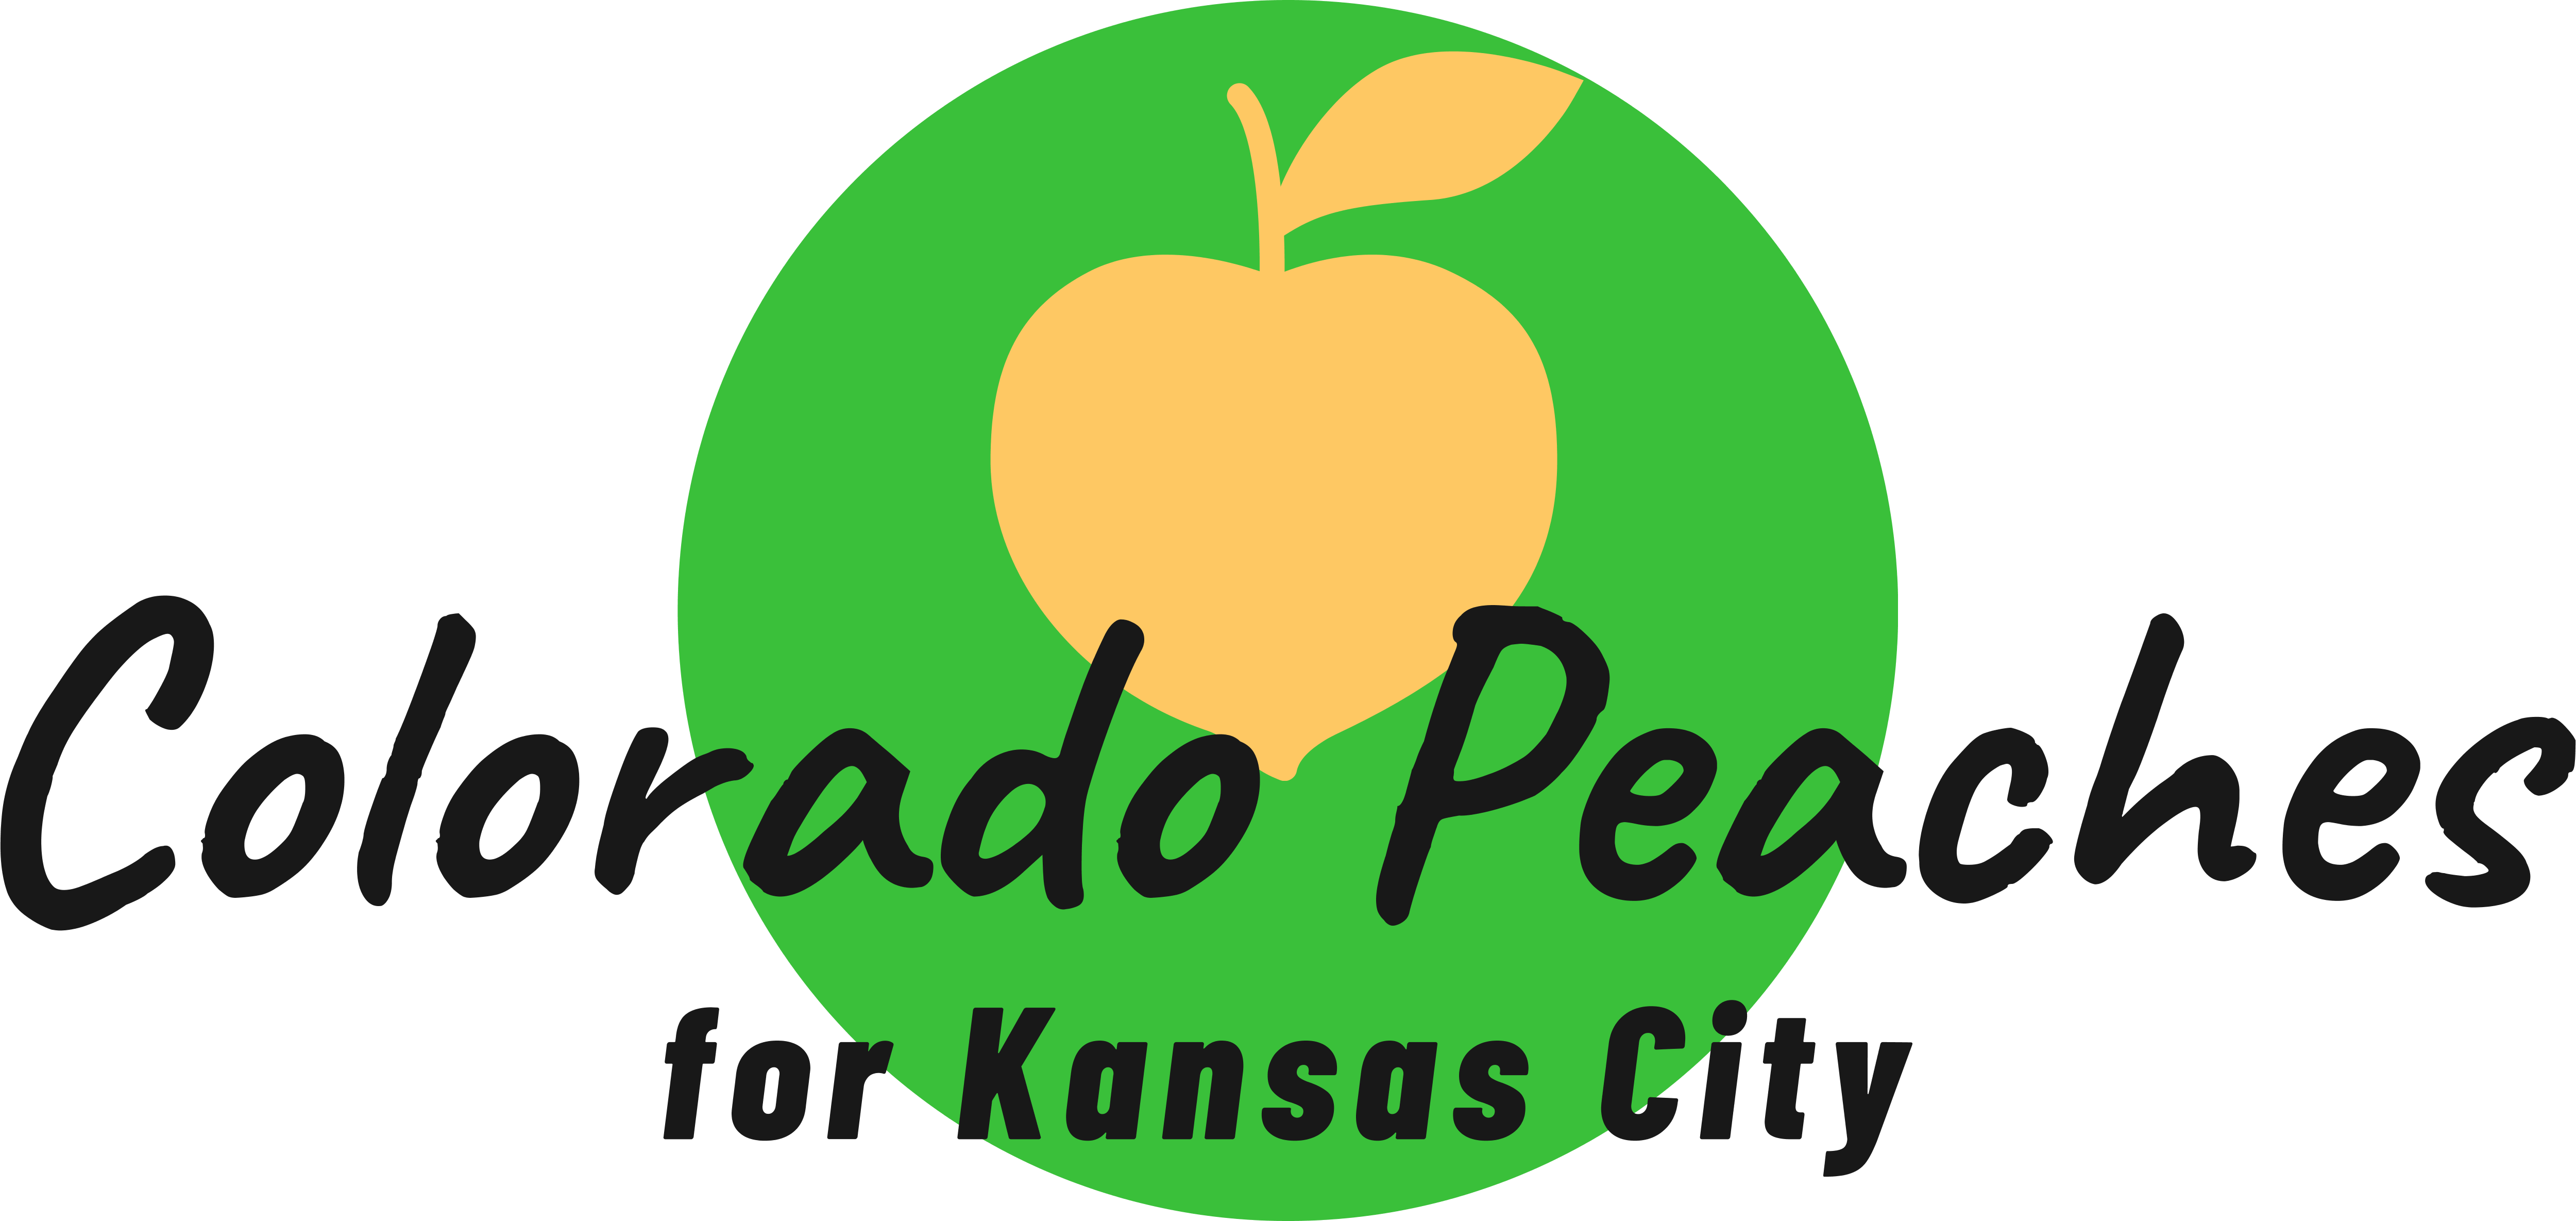 Colorado Peaches for Kansas City Pop-Up Stand | Aug 31st